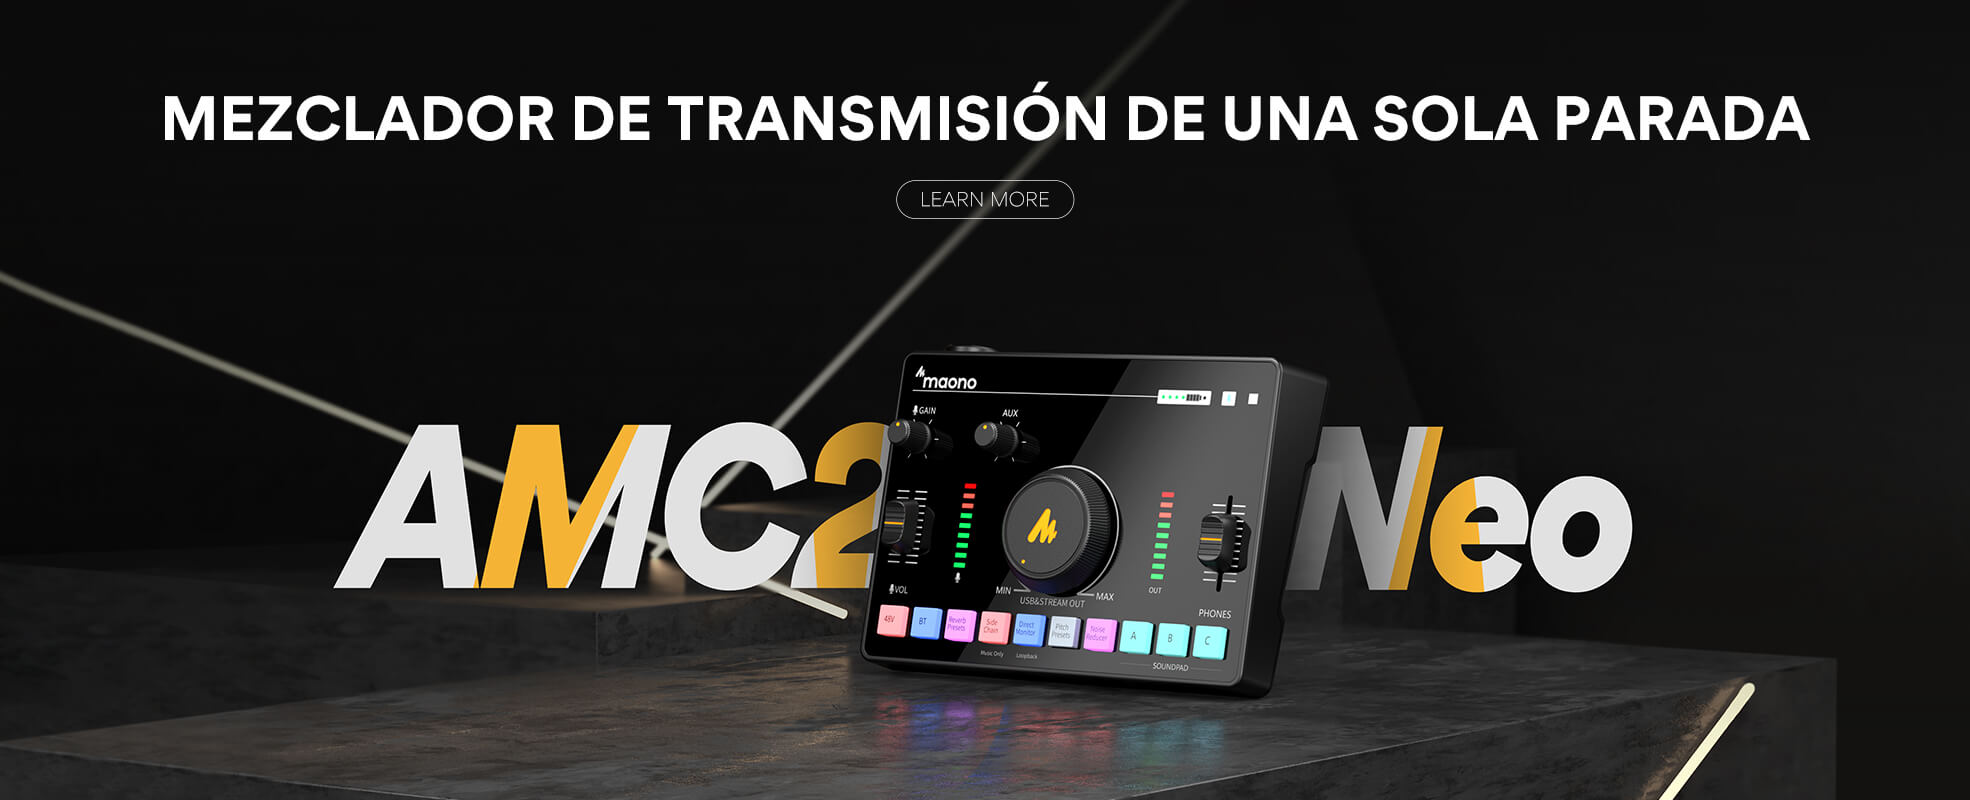 MAONOCASTER_AMC2_NEO_Mezclador_de_audio_de_transmision_de_una_sola_parada_1970X800-01